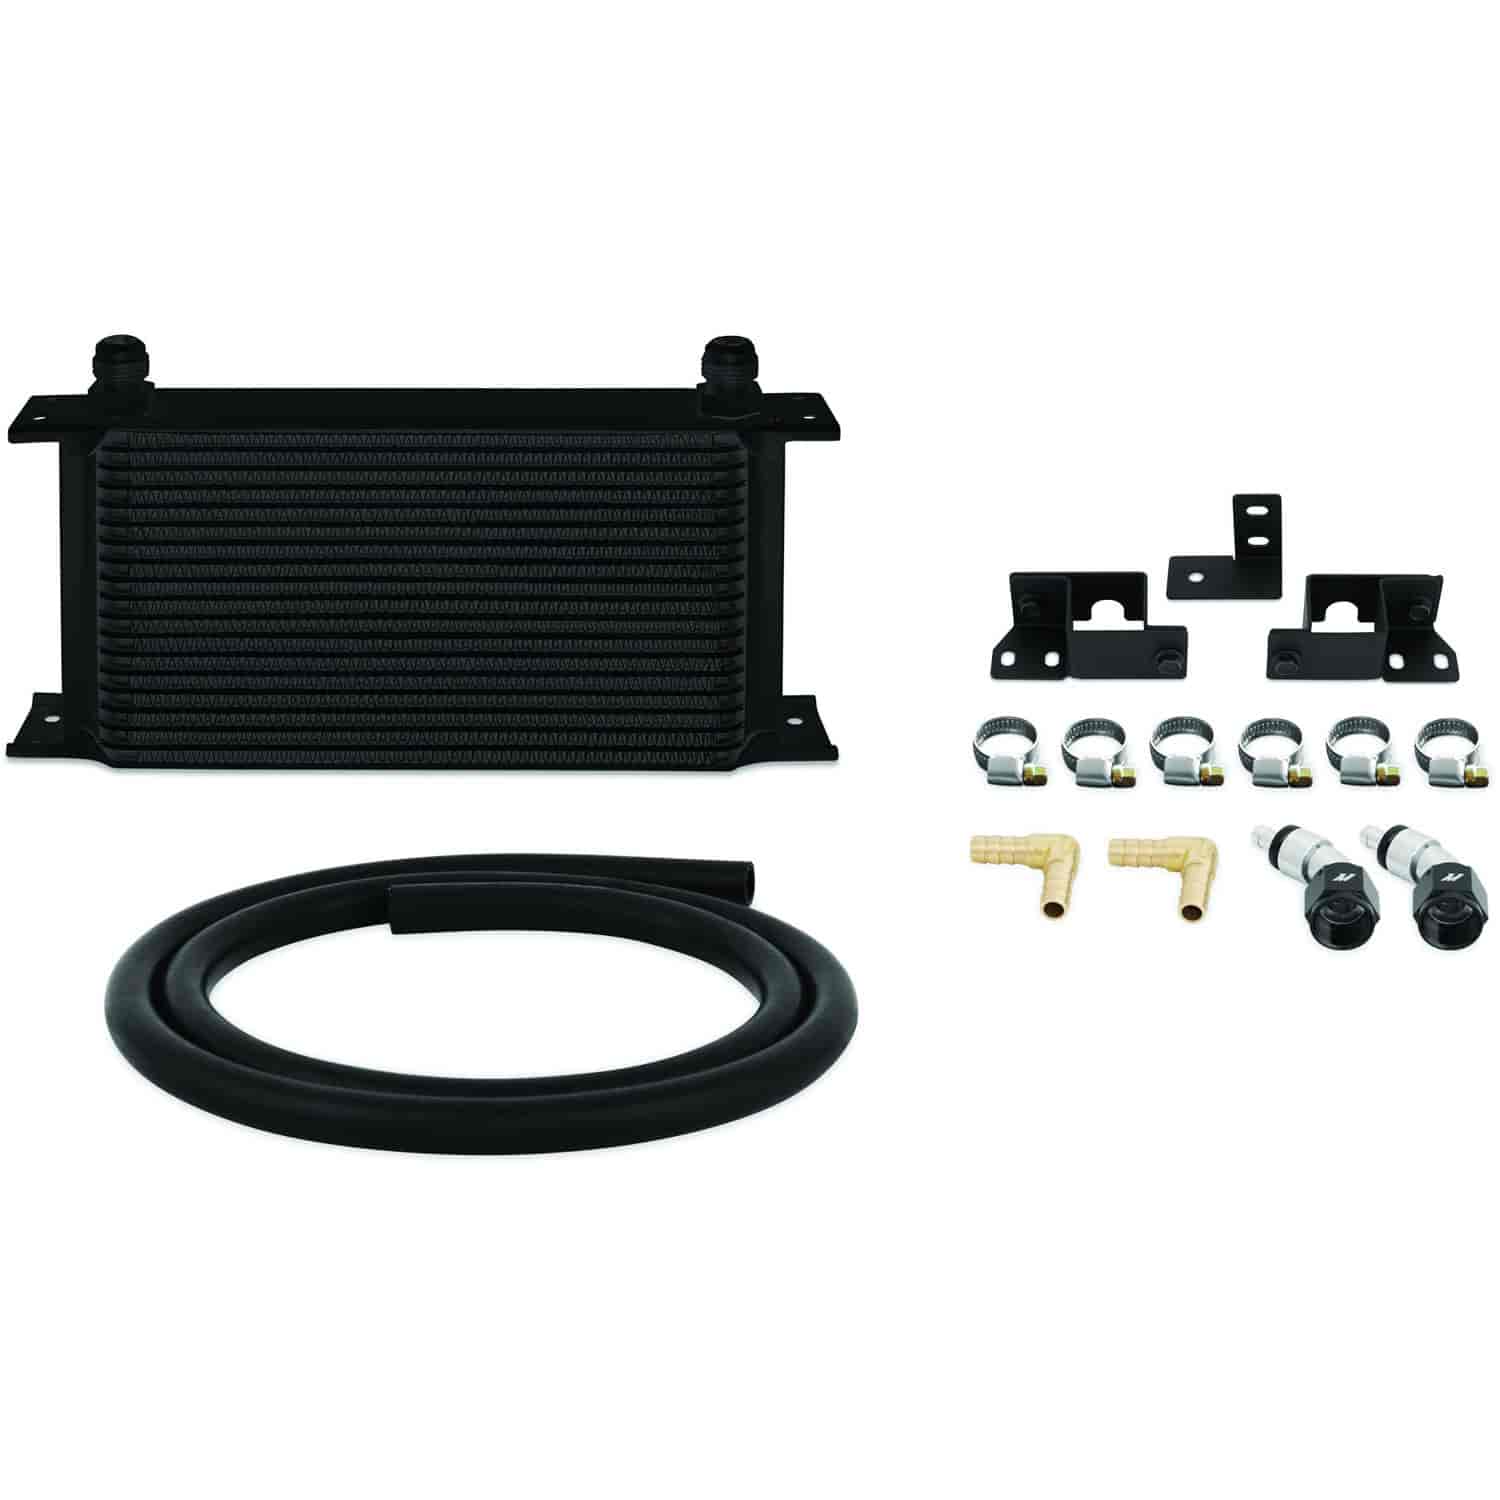 Transmission Fluid Cooler for 2007-2011 Jeep Wrangler JK